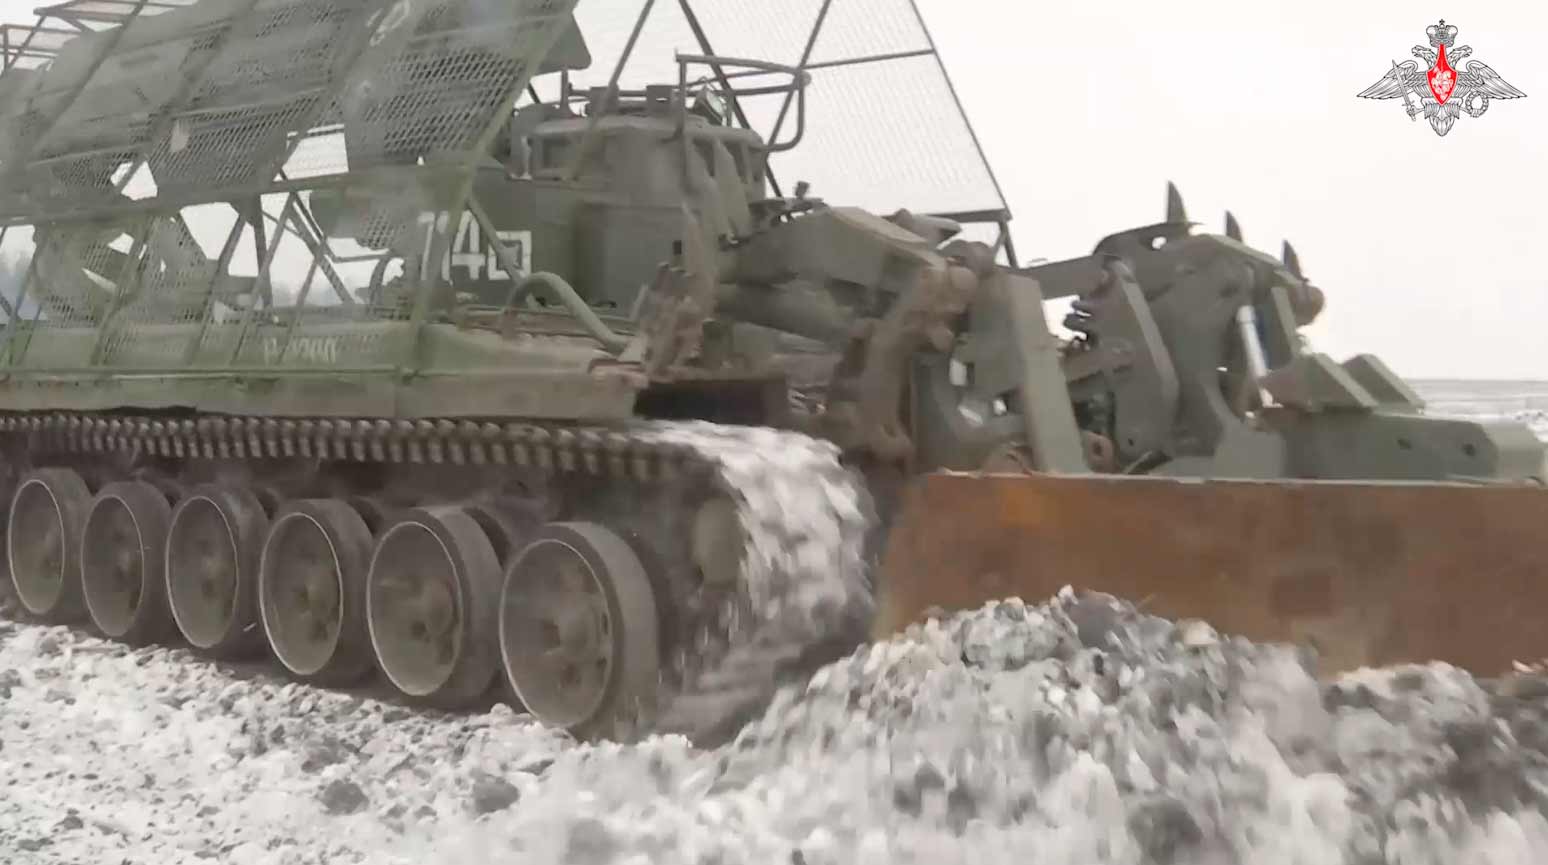 Video toont het werk van Russische ingenieurs bij het opruimen en ontploffen van landmijnen